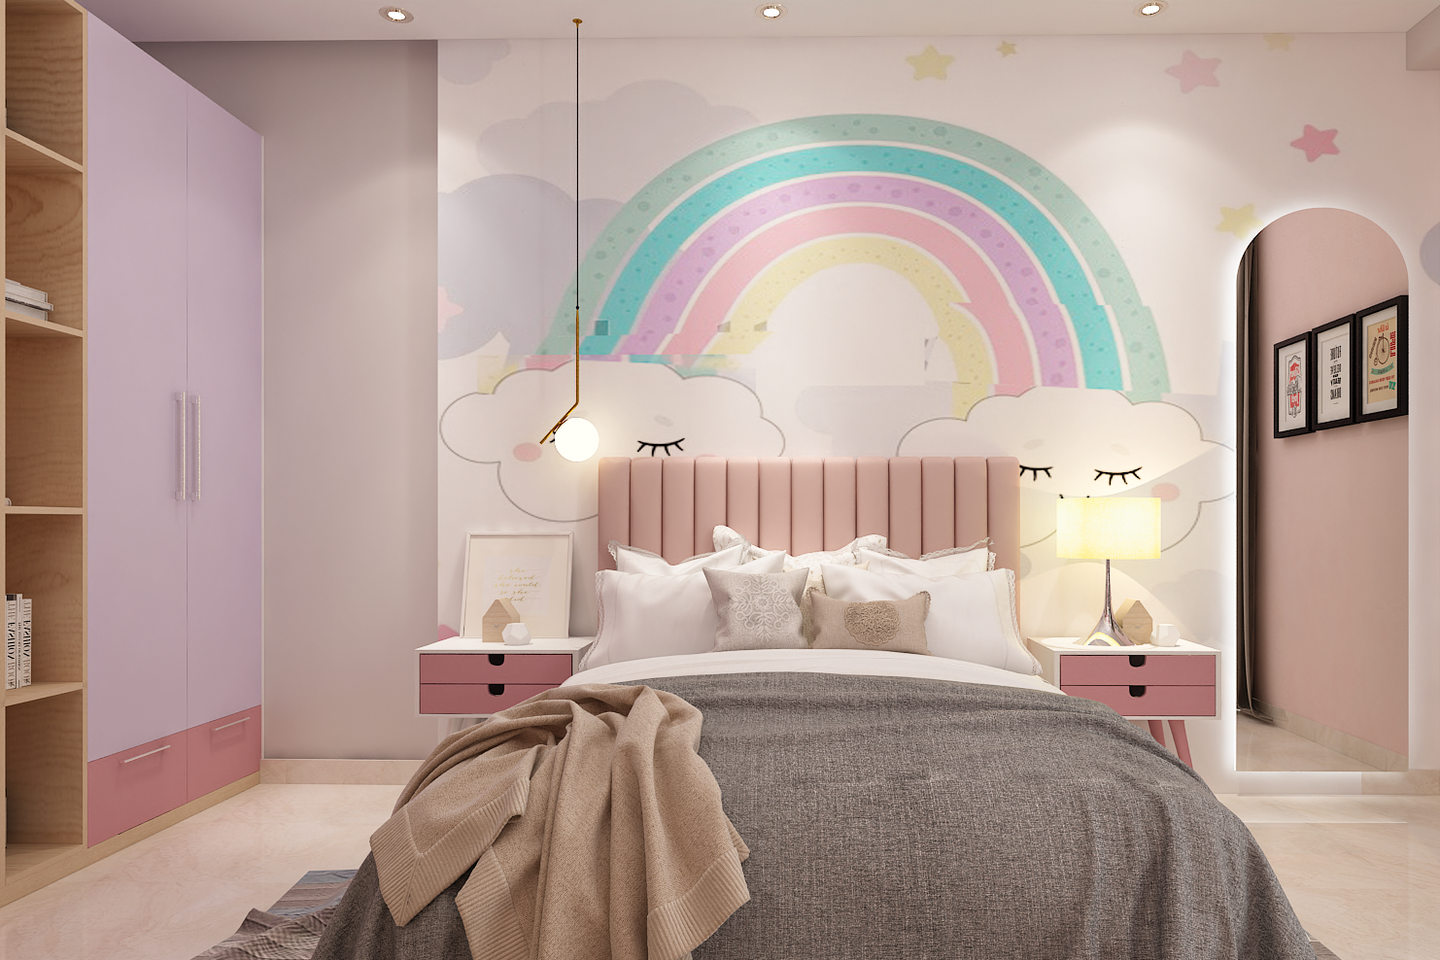 Kid's Bedroom With Rainbow Wallpaper - Livspace